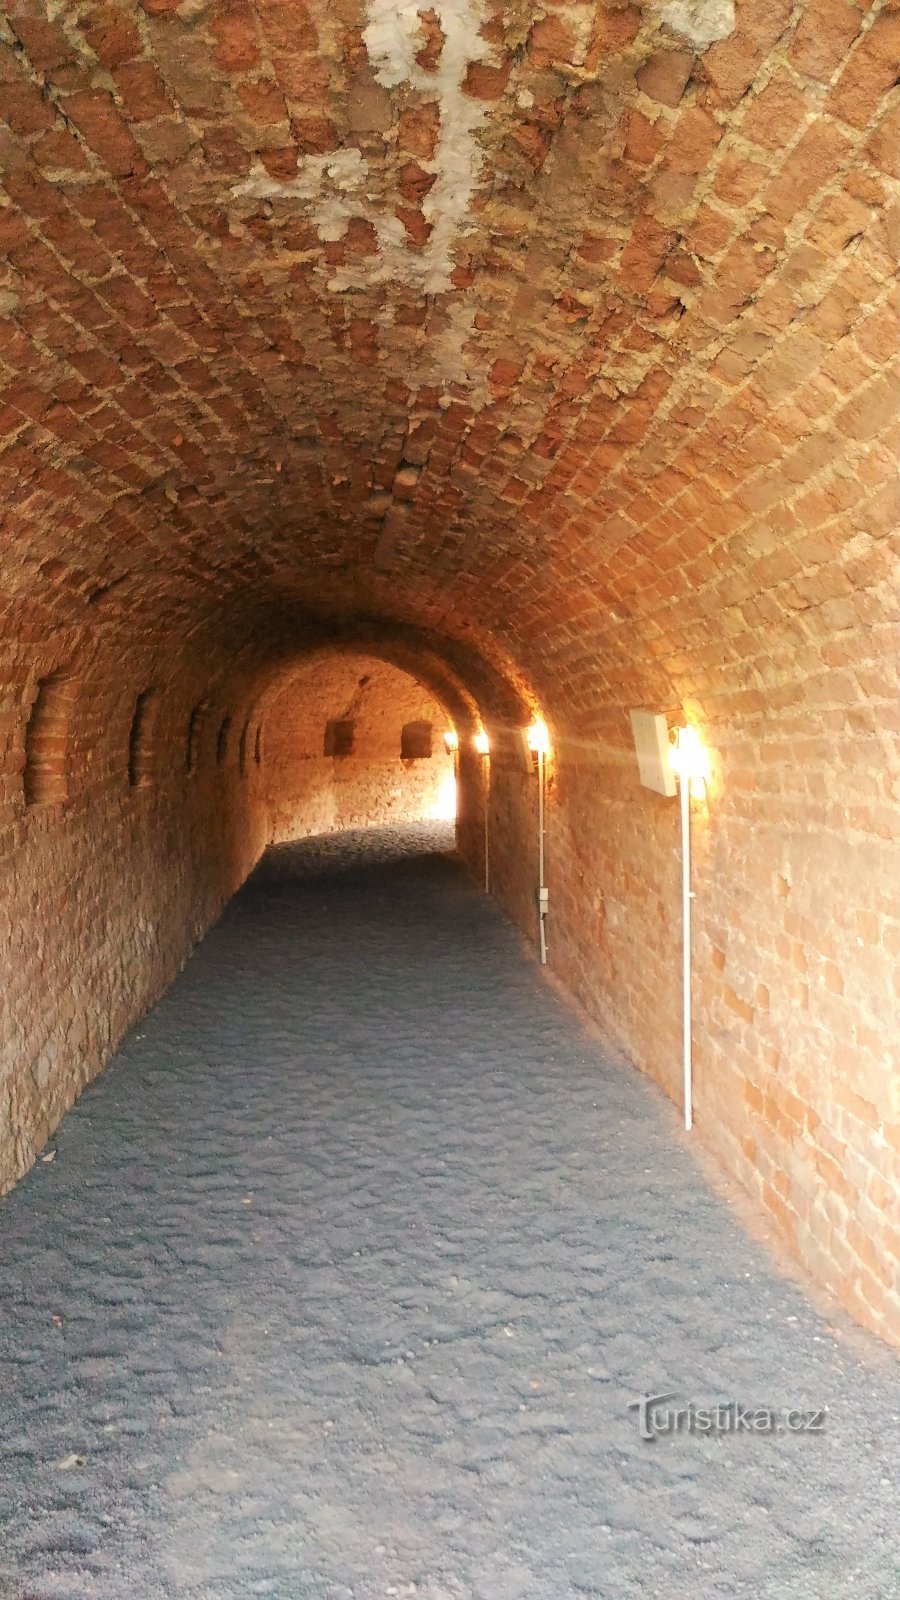 Kolumbarij geta u tvrđavi Terezín.